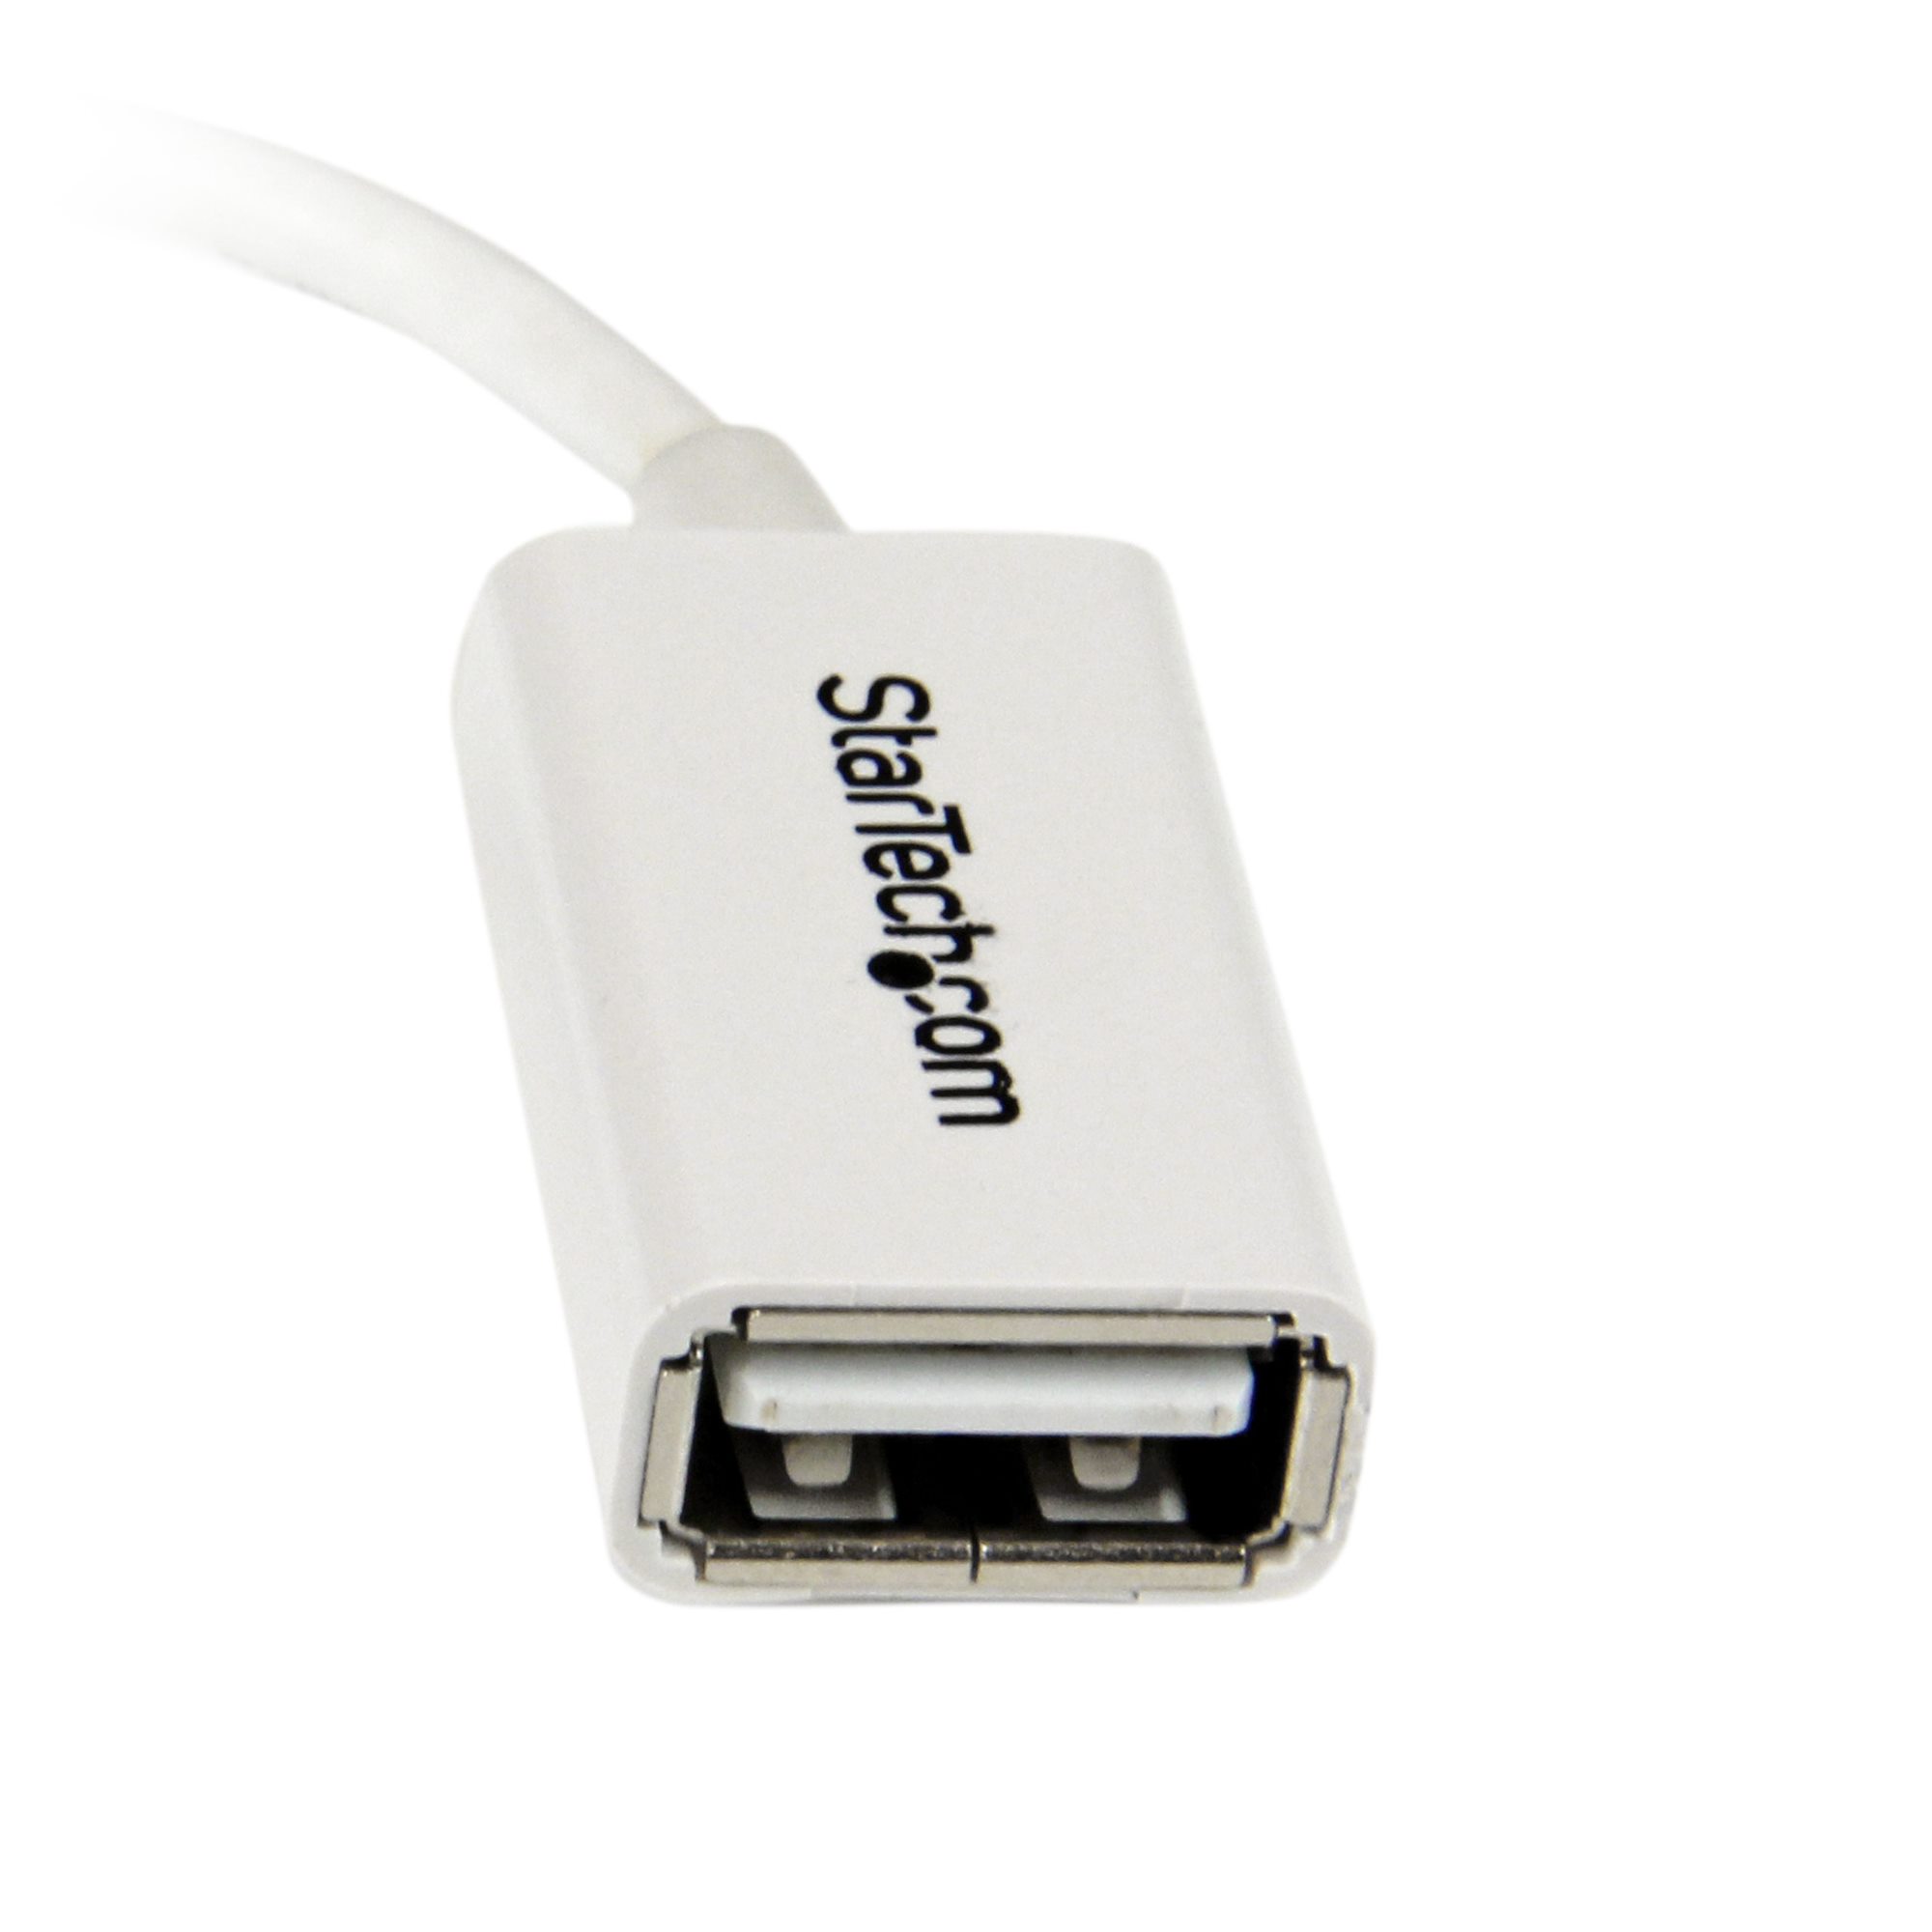 ADAPTADOR CONECTOR OTG CABLE MICRO USB HEMBRA (H) A TIPO C MACHO(M) PARA  CARGA DATOS NOTEBOOK